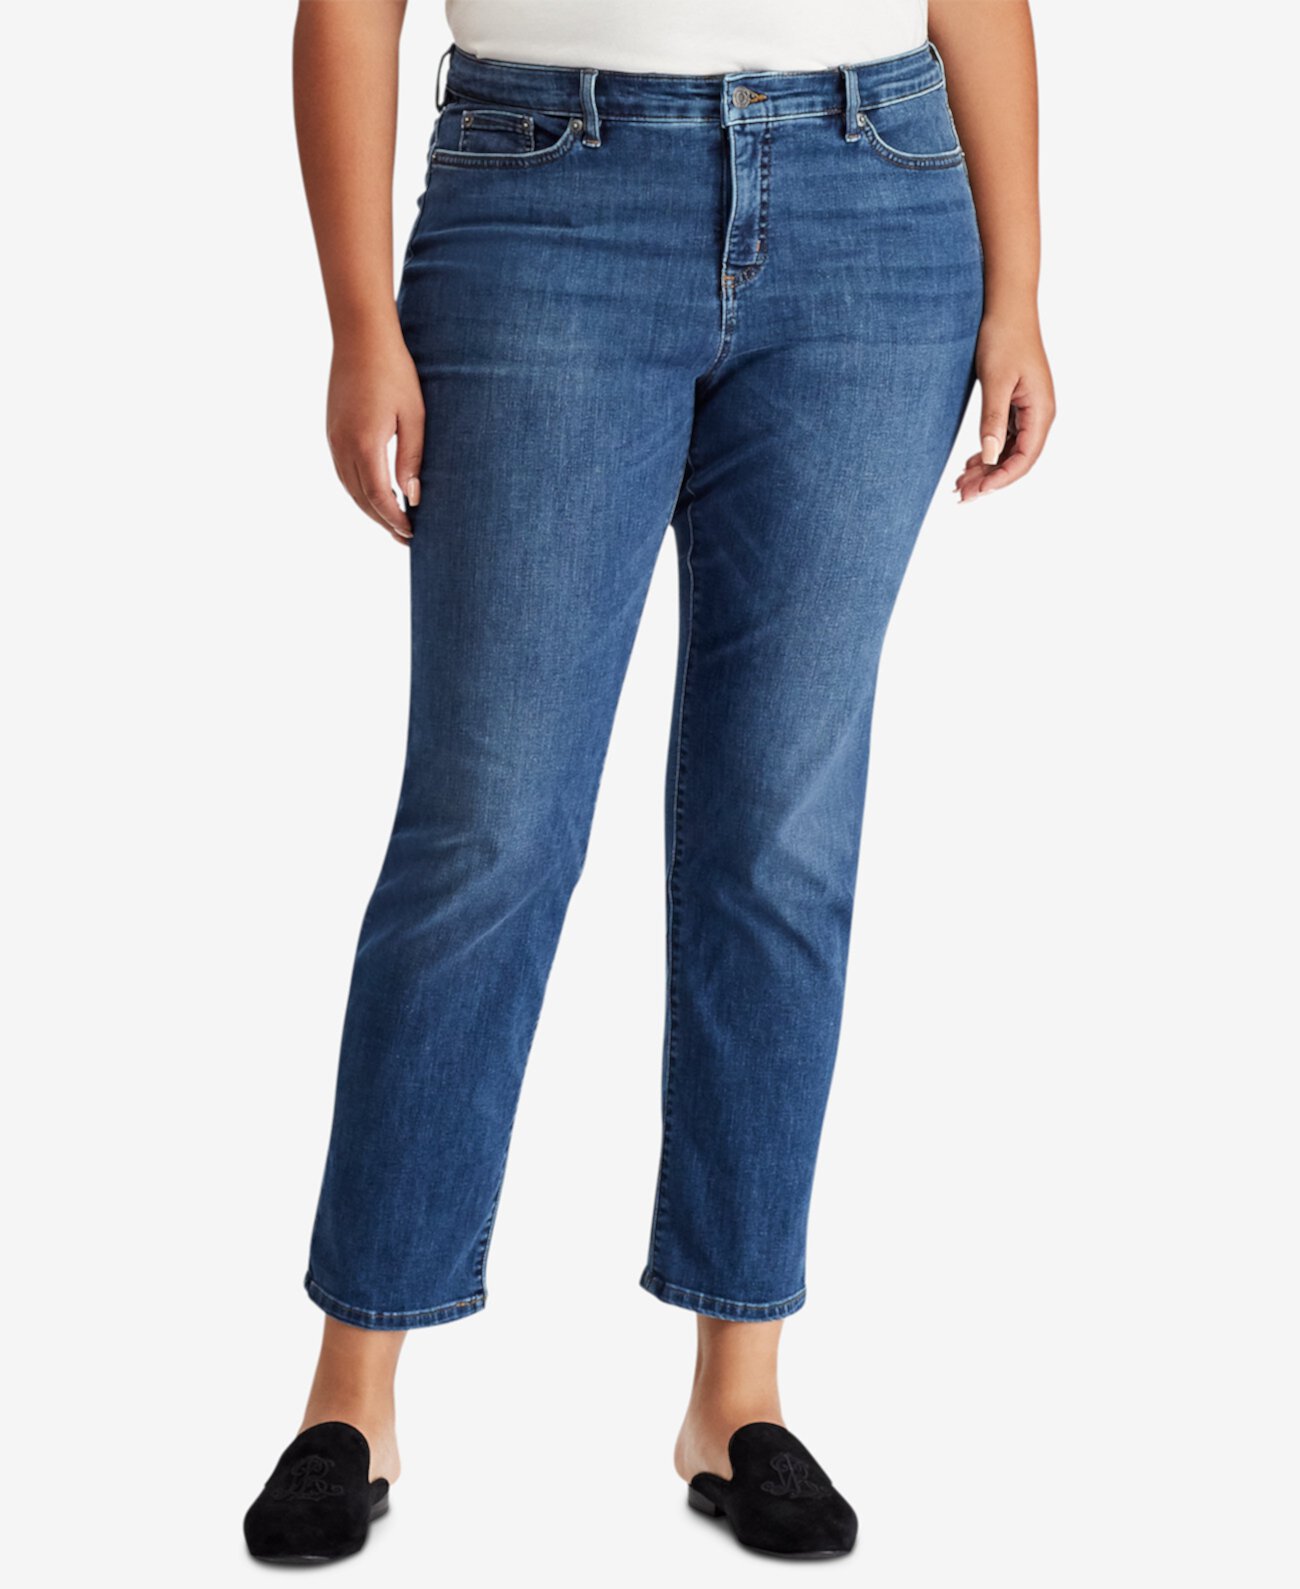 Прямые пышные джинсы Premier больших размеров Ralph Lauren